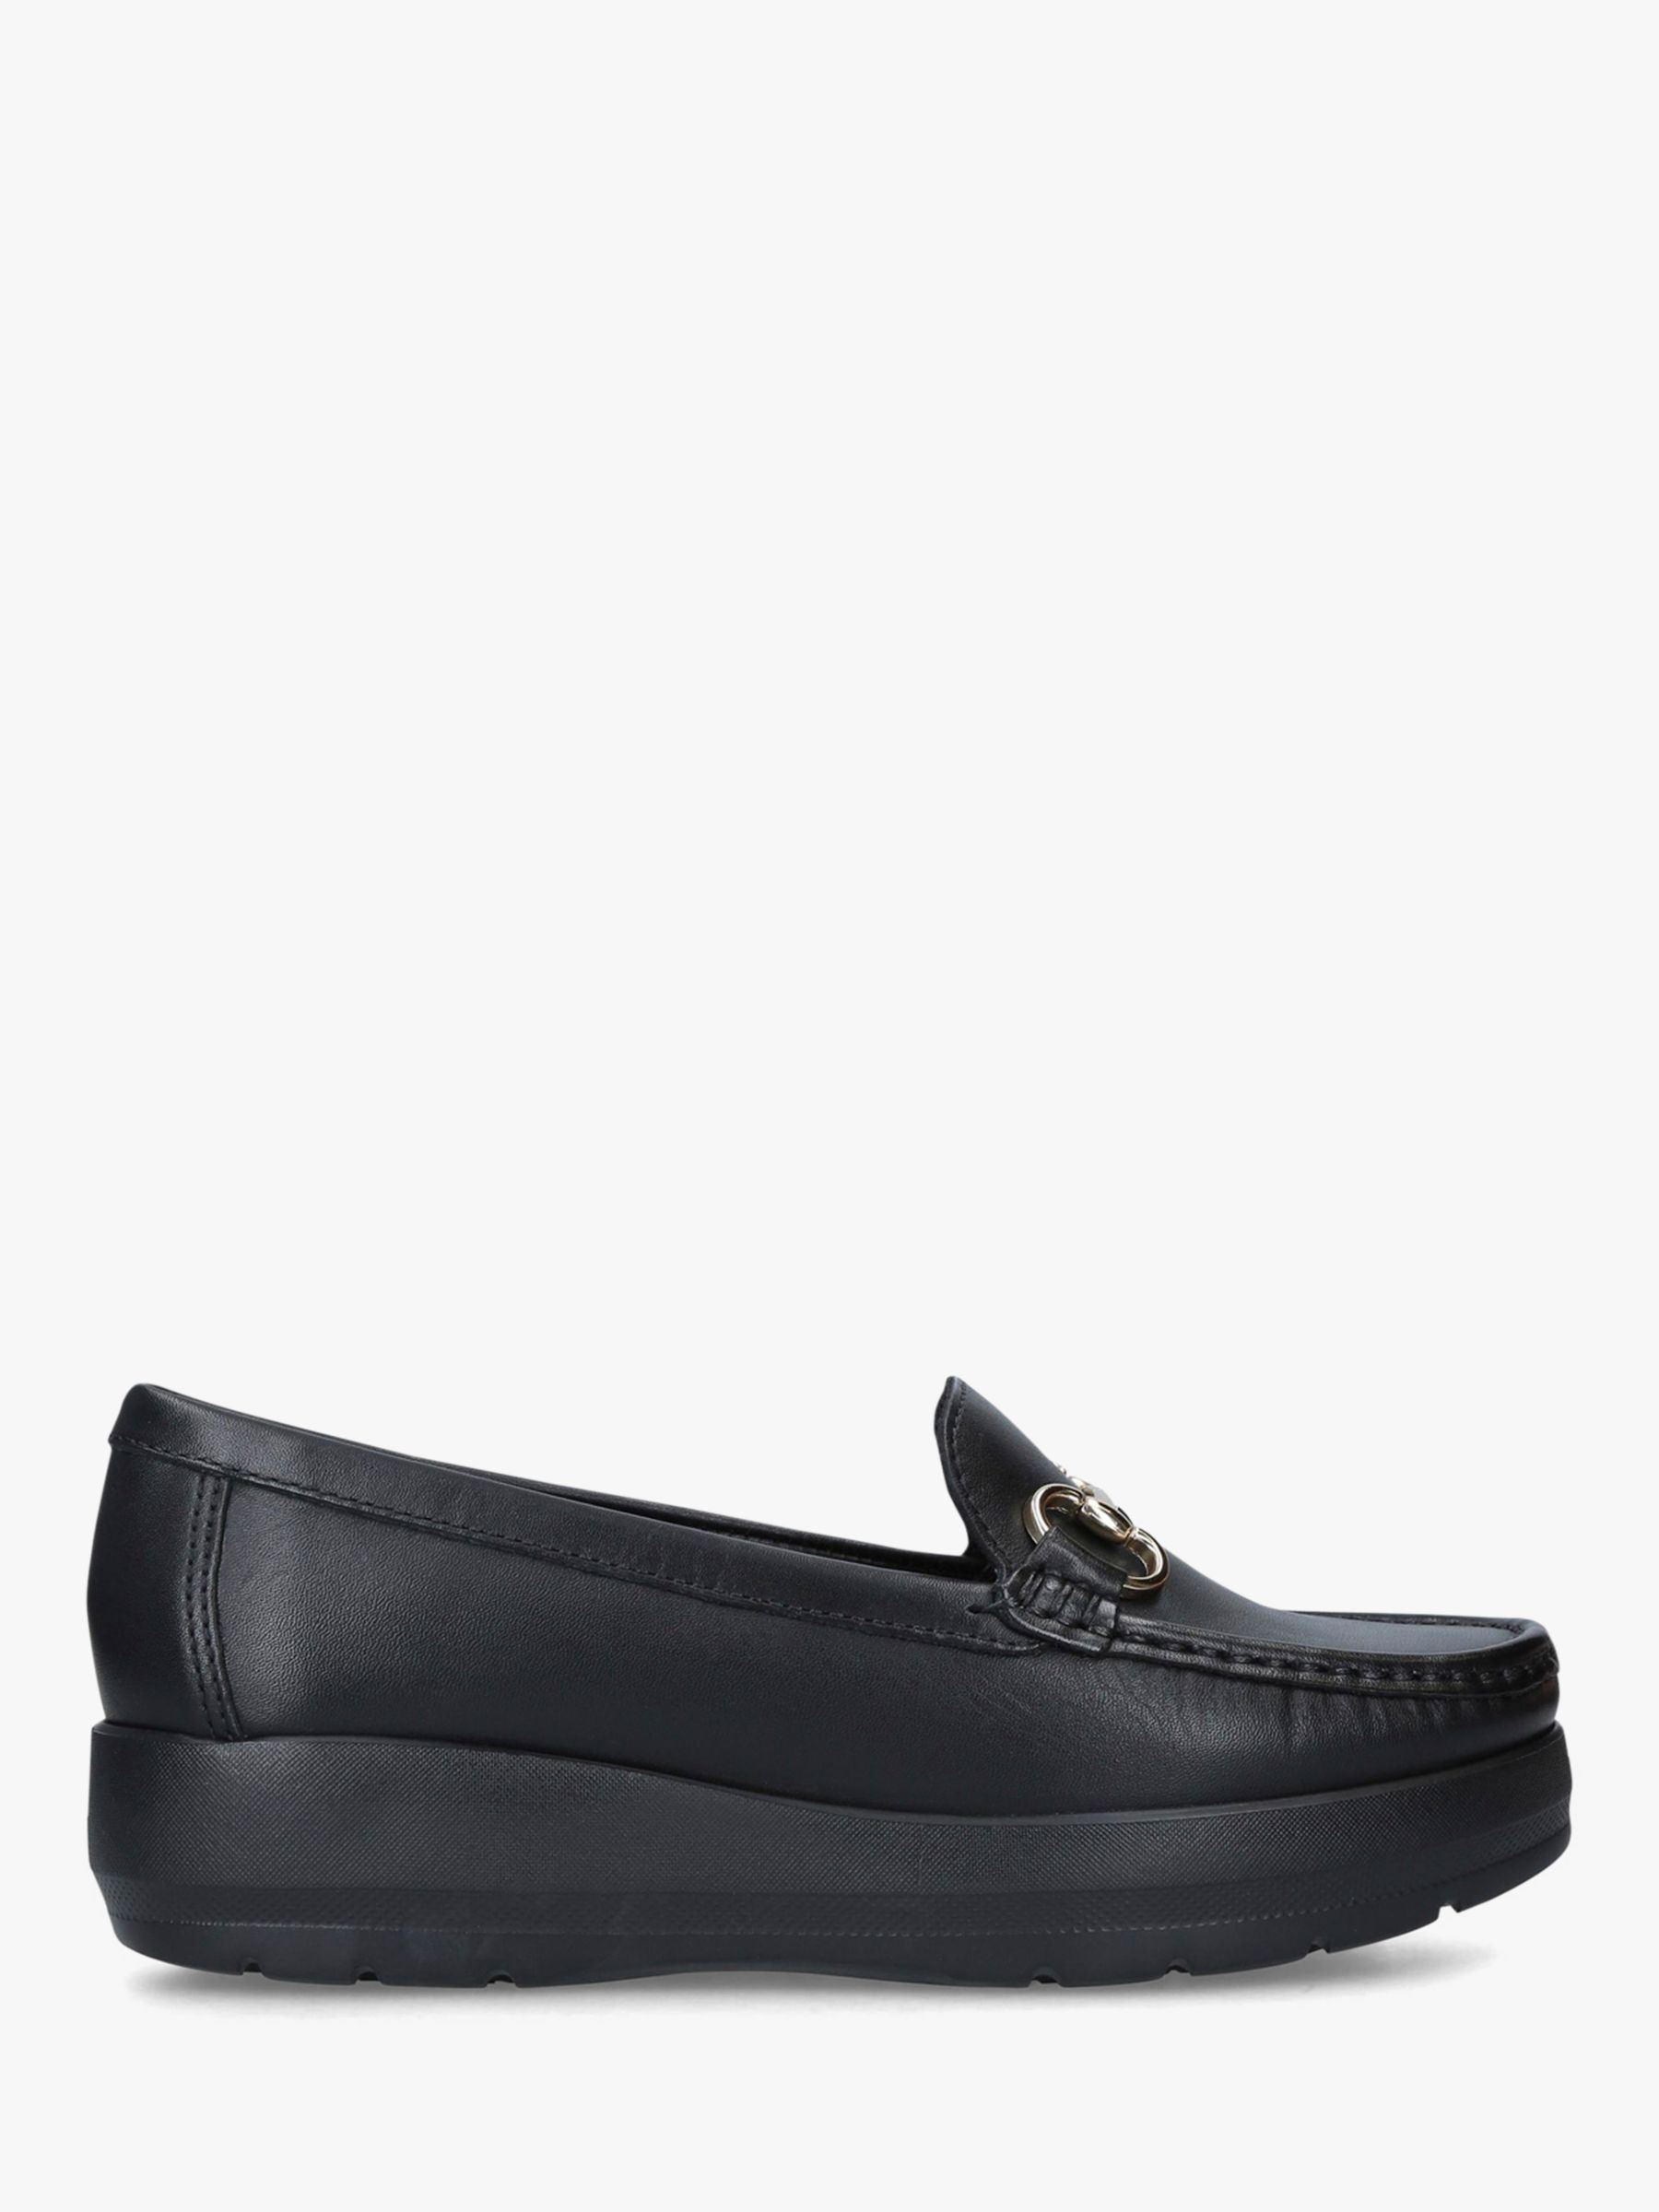 Carvela Comfort Chaz Leather Flatform Loafers, Black